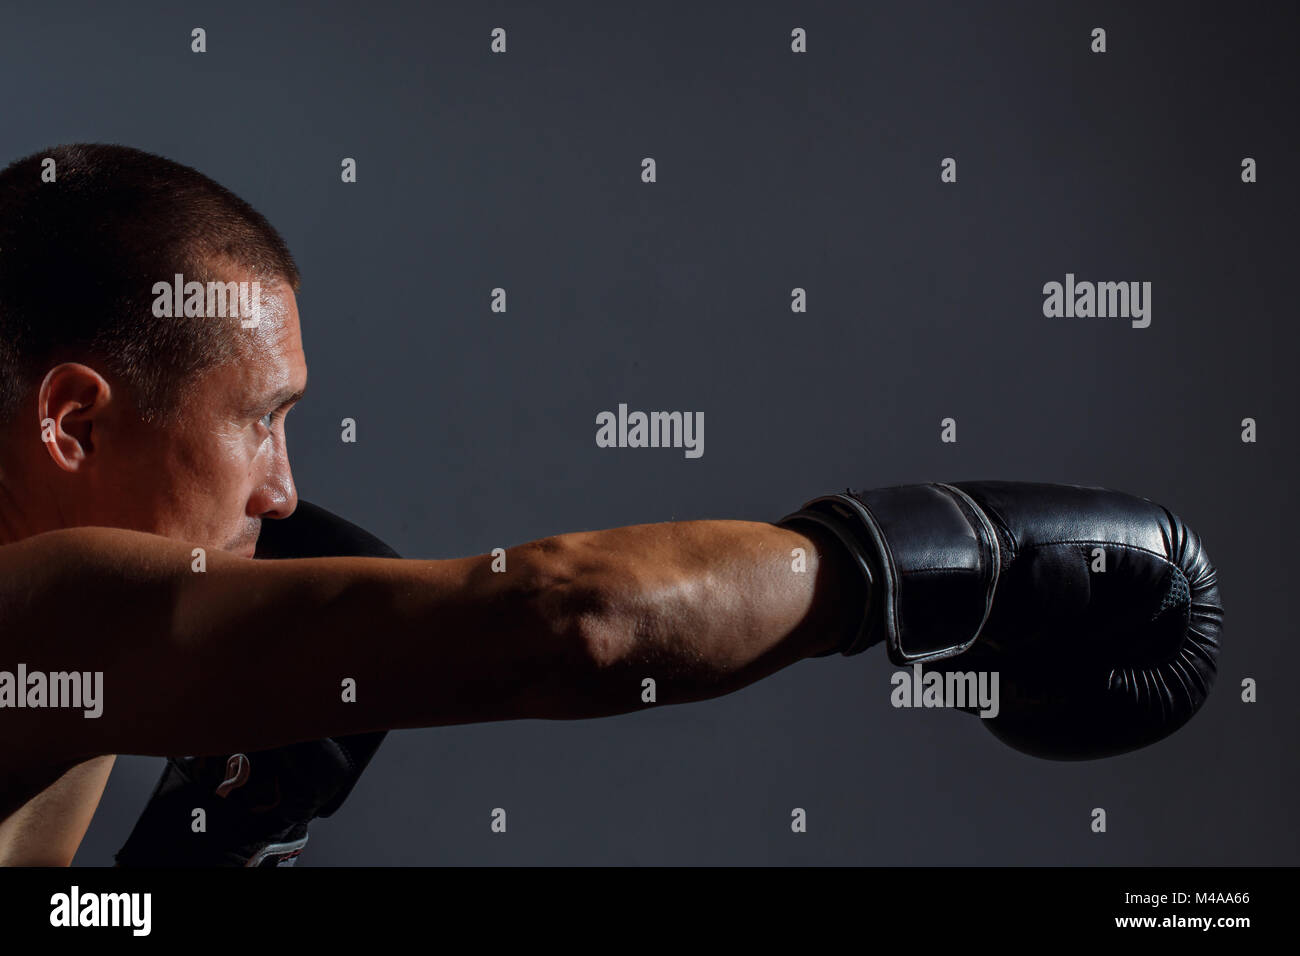 Sportliche Mann beim Boxen Übung macht direct hit Stockfoto